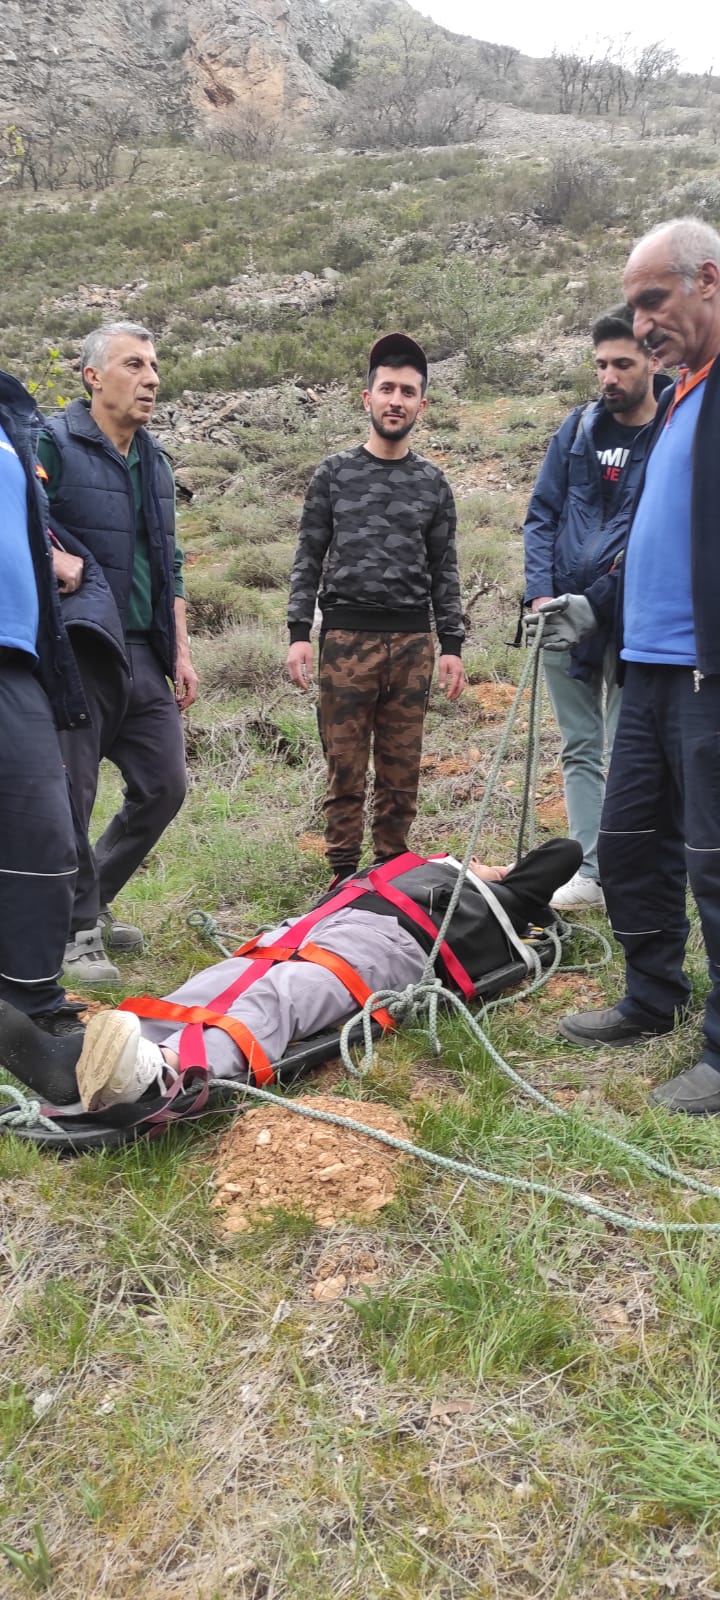 Malatya’da dağa ot toplamaya acıkan 70 yaşındaki bir kişi kayması sonucu ayağını kırdı. Dağa çıkan AFAD ekipleri, şahsı 2 kilometre sedye ile taşıyarak sağlık ekiplerine teslim etti.